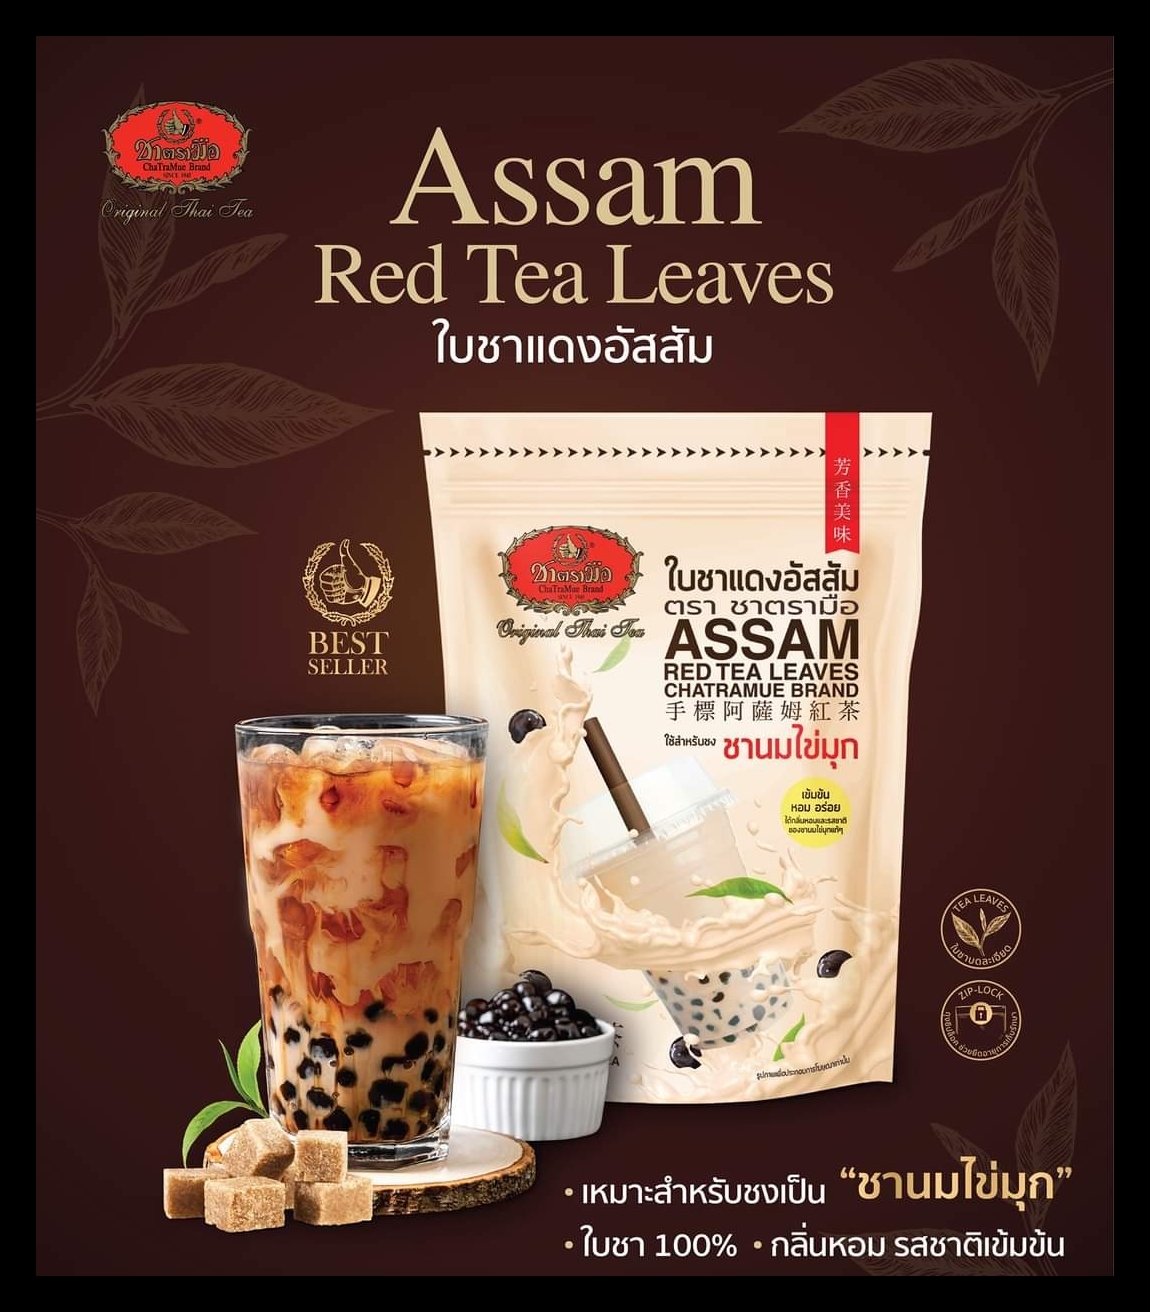 ชาตรามือ ใบชาแดงอัสสัม ชนิดถุง 250 กรัม (ASSAM RED TEA - BAG 250 G.)